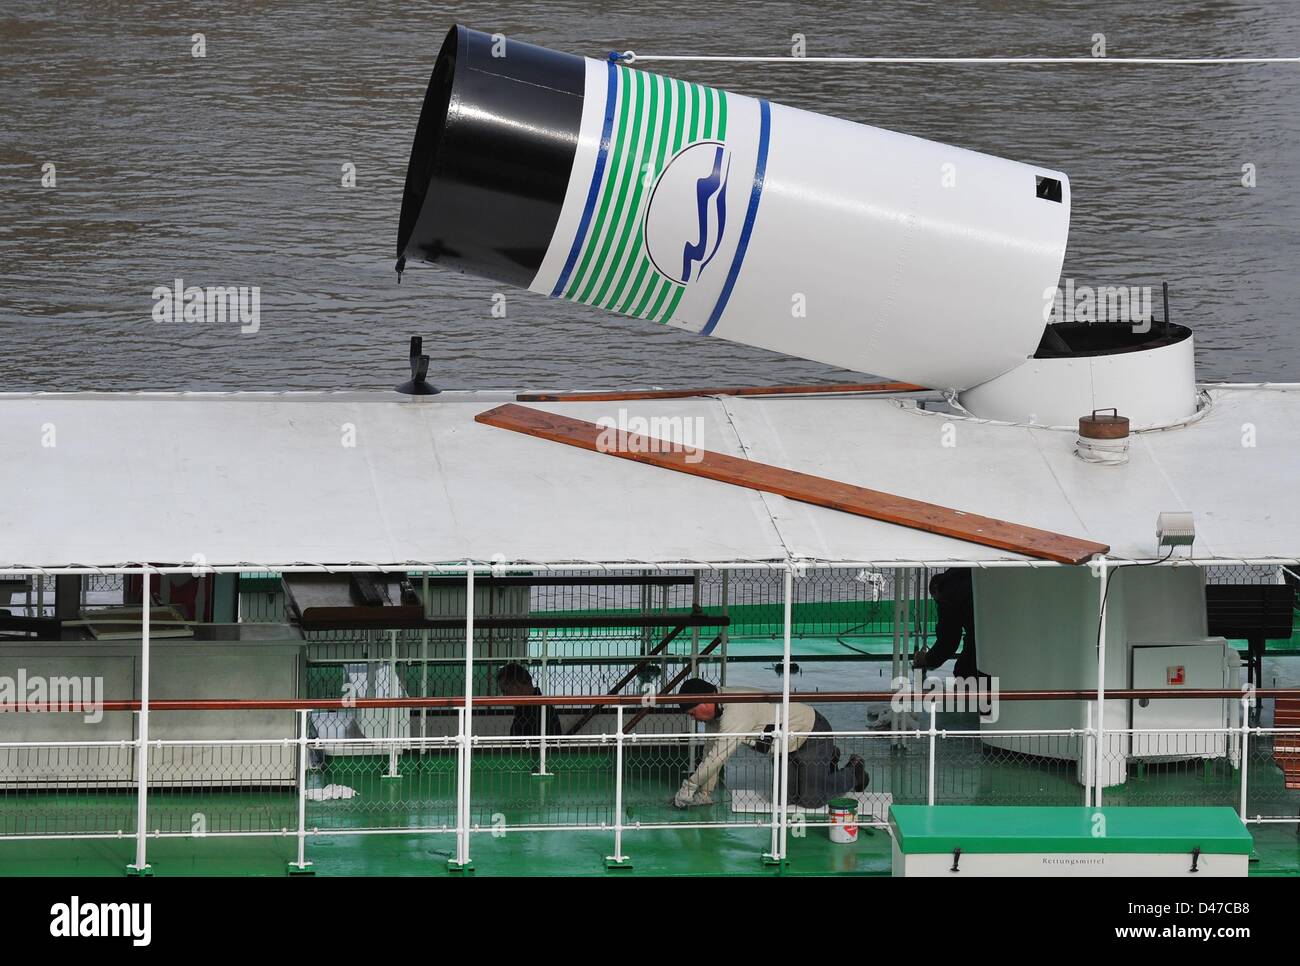 Los trabajadores de la empresa de Steamboat Saxon pintar el steamboat 'Leipzig' construido en 1929 a orillas del río Elba en Dresde (Alemania), 07 de marzo de 2013. Los barcos iniciará operaciones en el horario de verano el 28 de marzo de 2013. Foto: MATTHIAS HIEKEL Foto de stock